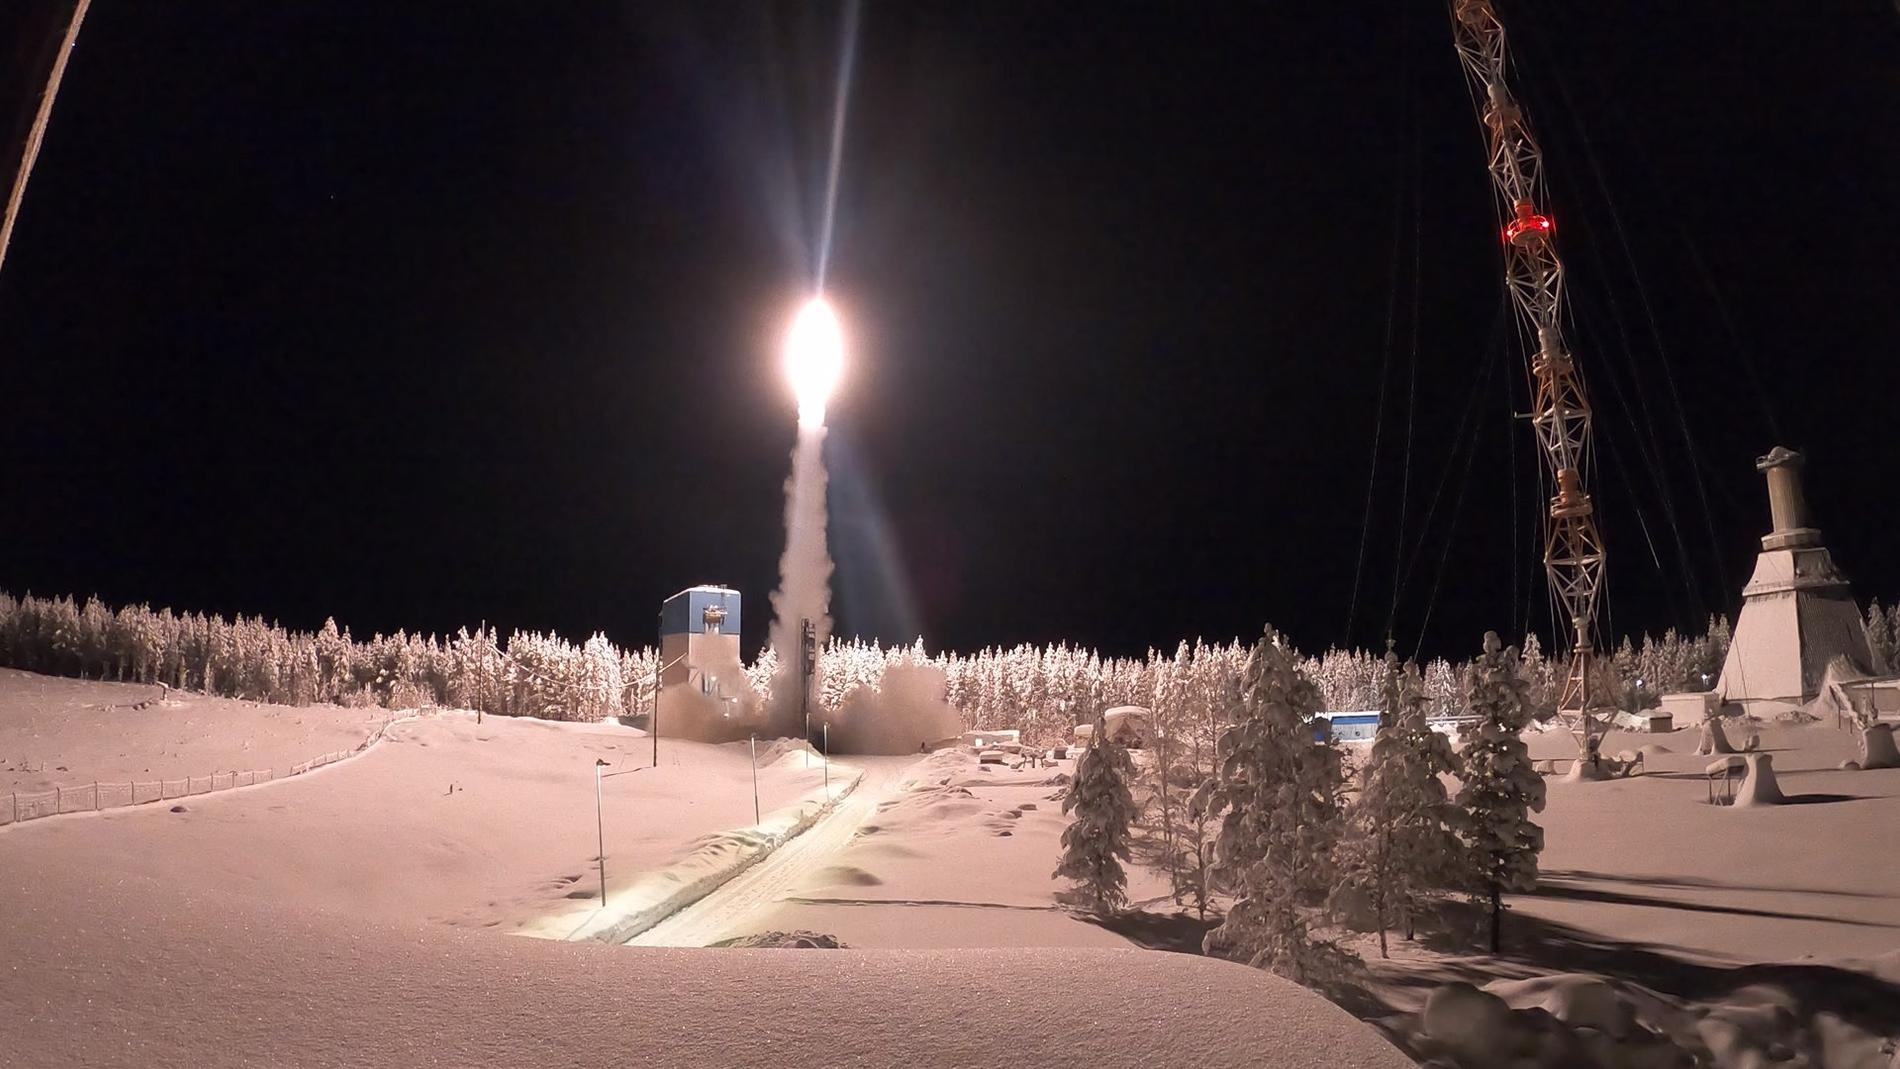 Raketen Spider-2 skjuts upp från rymdbasen Esrange utanför Kiruna med uppdrag att samla data om norrsken.